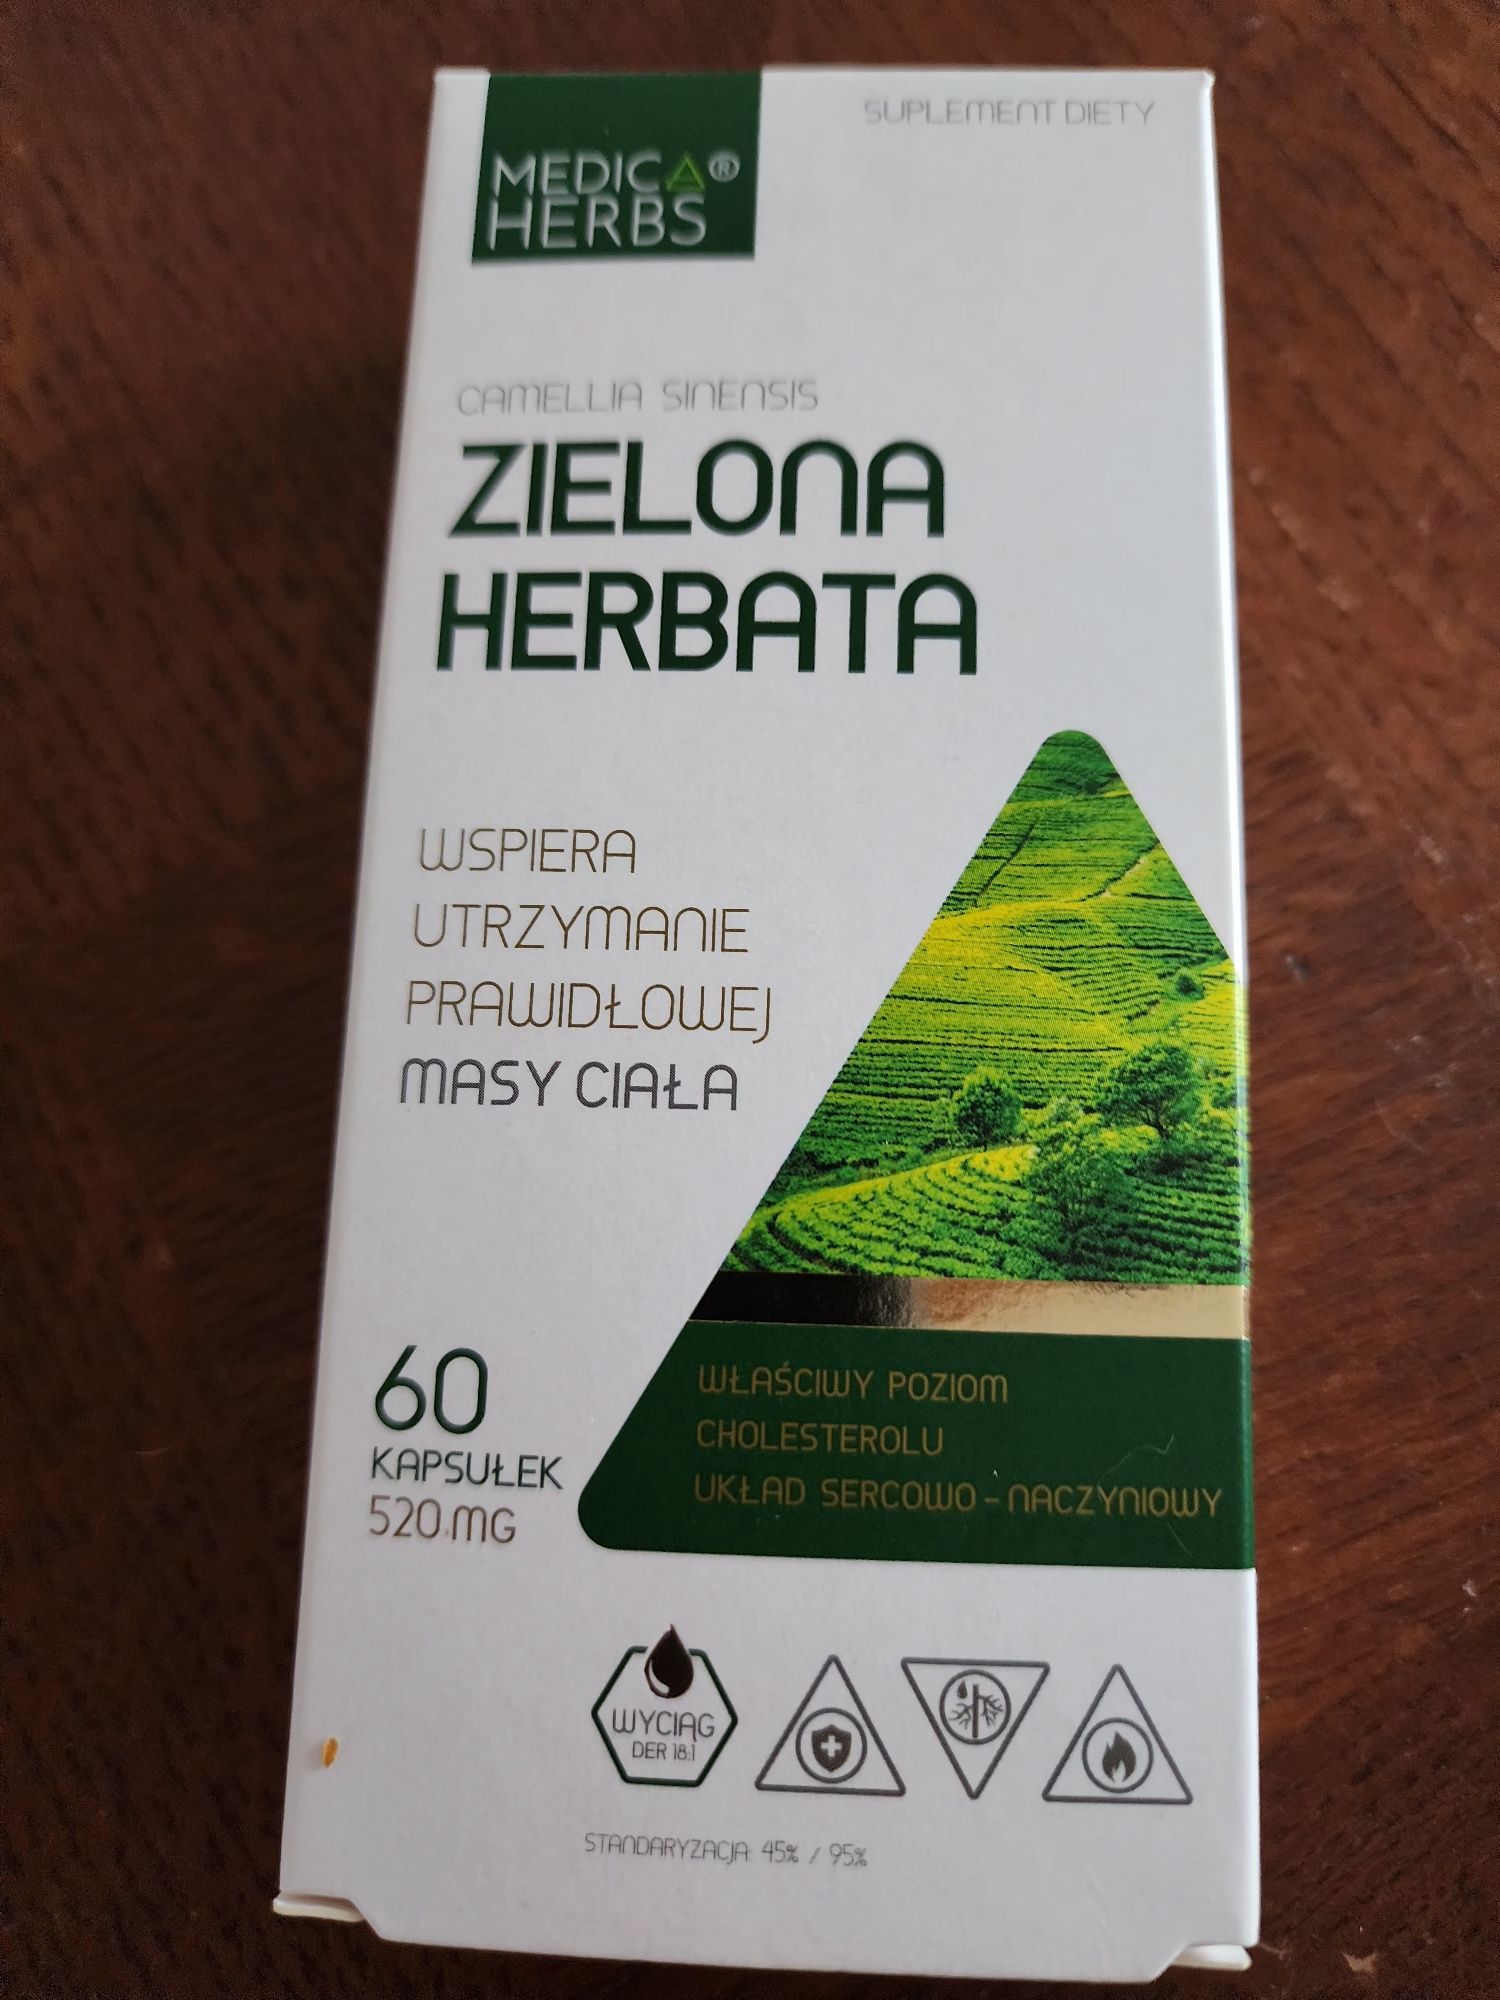 Zielona herbata Suplement diety Medica herbs